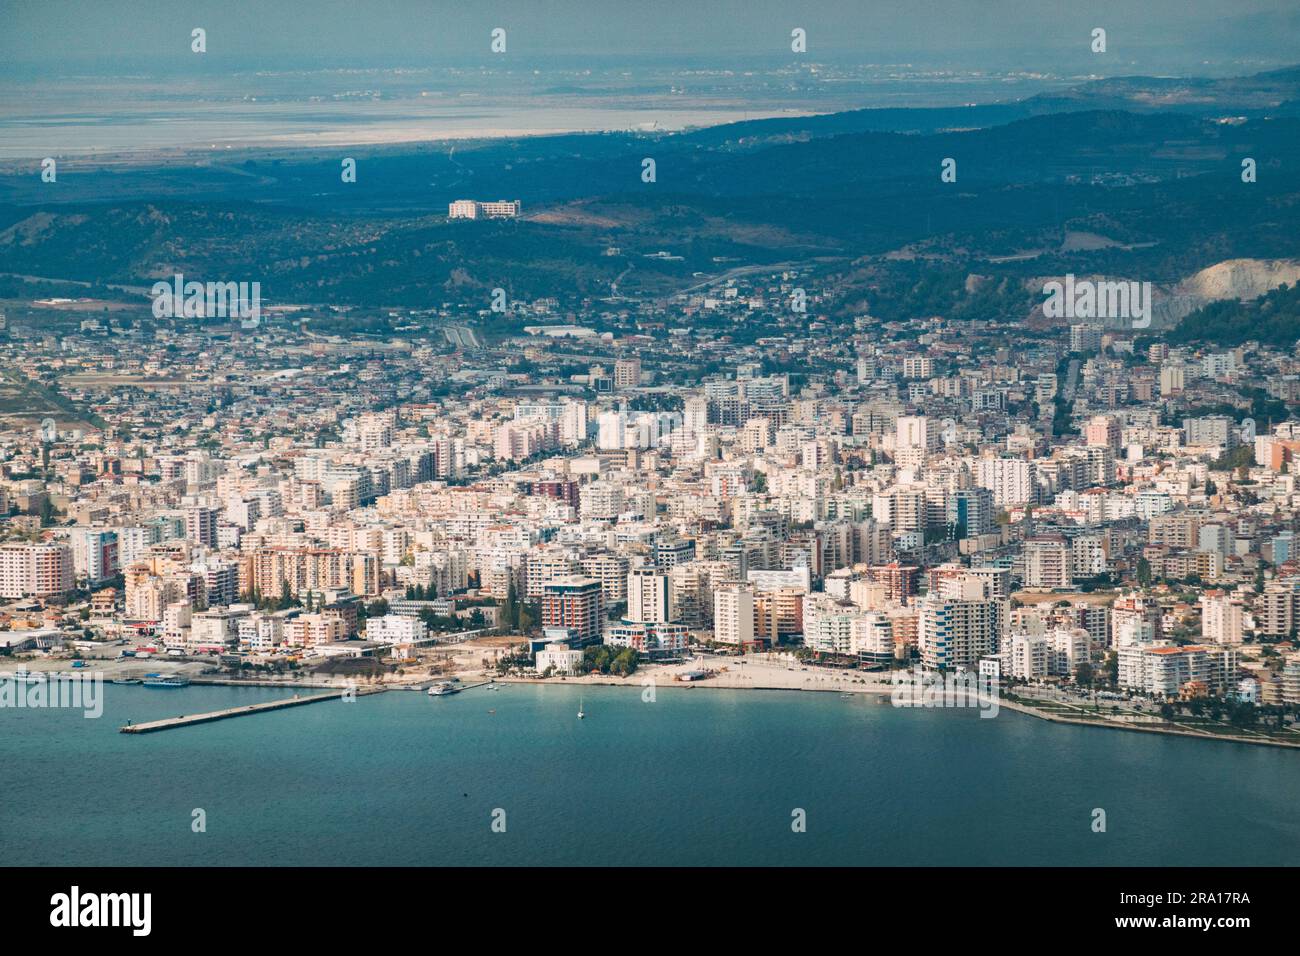 Affacciato sulla città costiera di Vlorë, nell'Albania meridionale Foto Stock